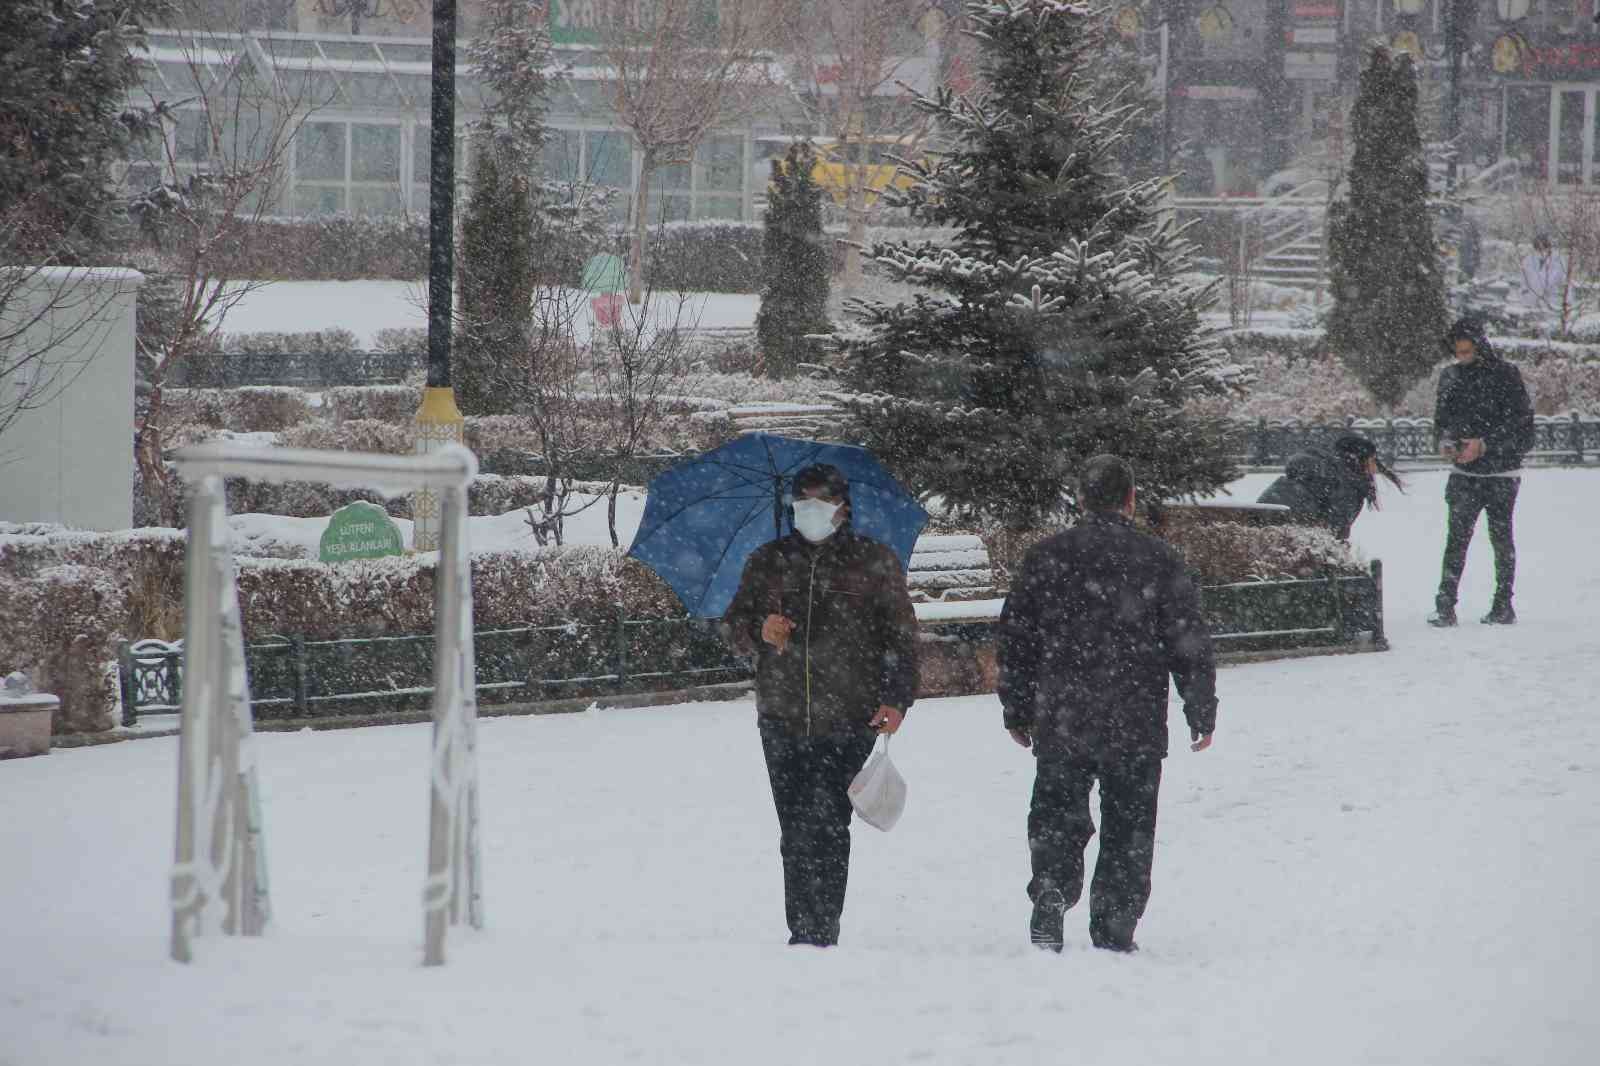 Erzurum’da kış geri döndü #erzurum